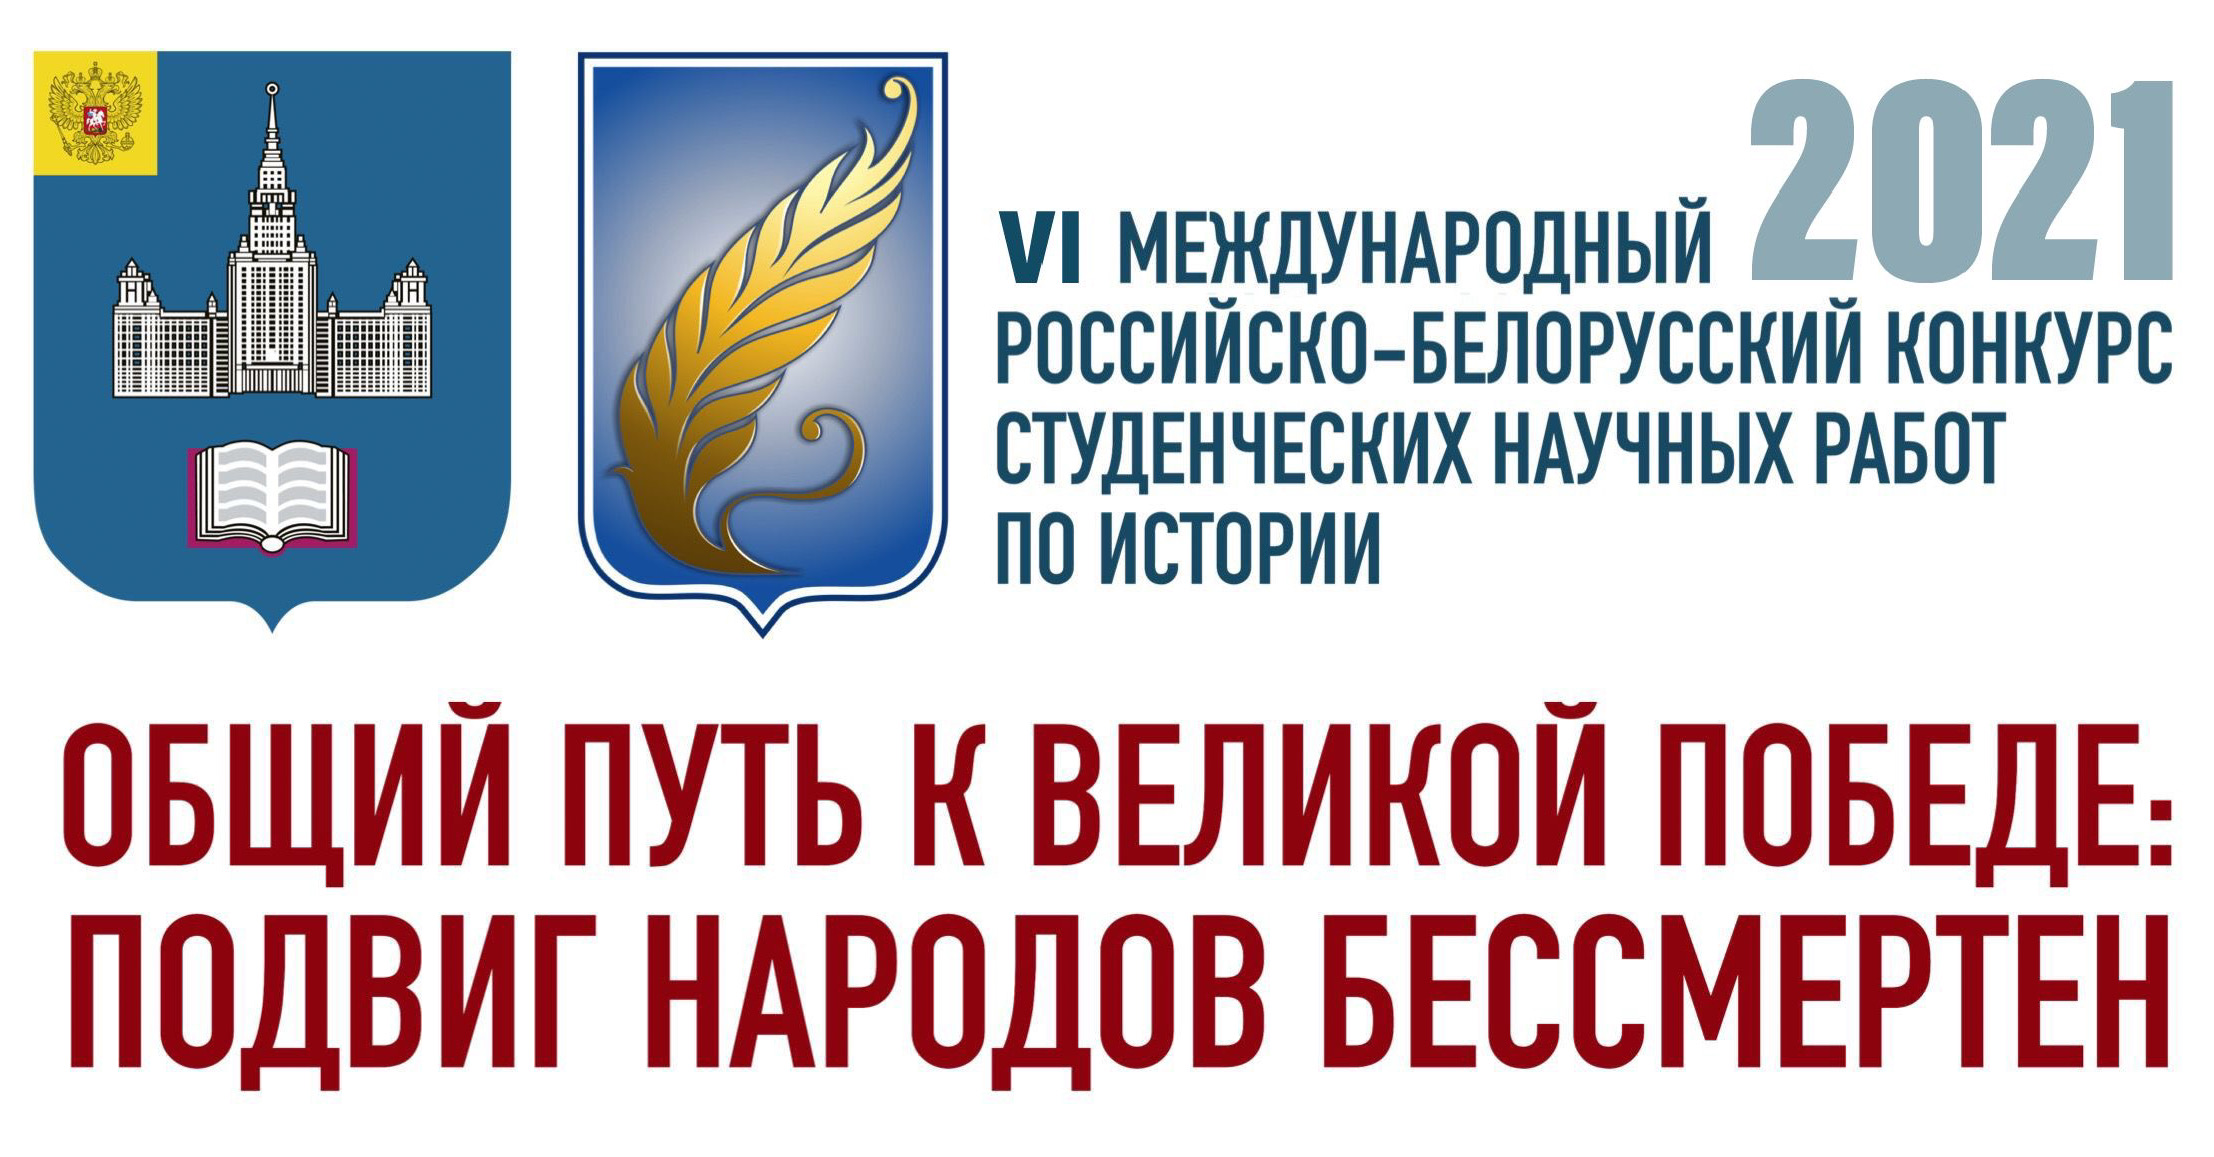 Результаты заочного этапа VI Международного российско-белорусского конкурса студенческих научных работ по истории